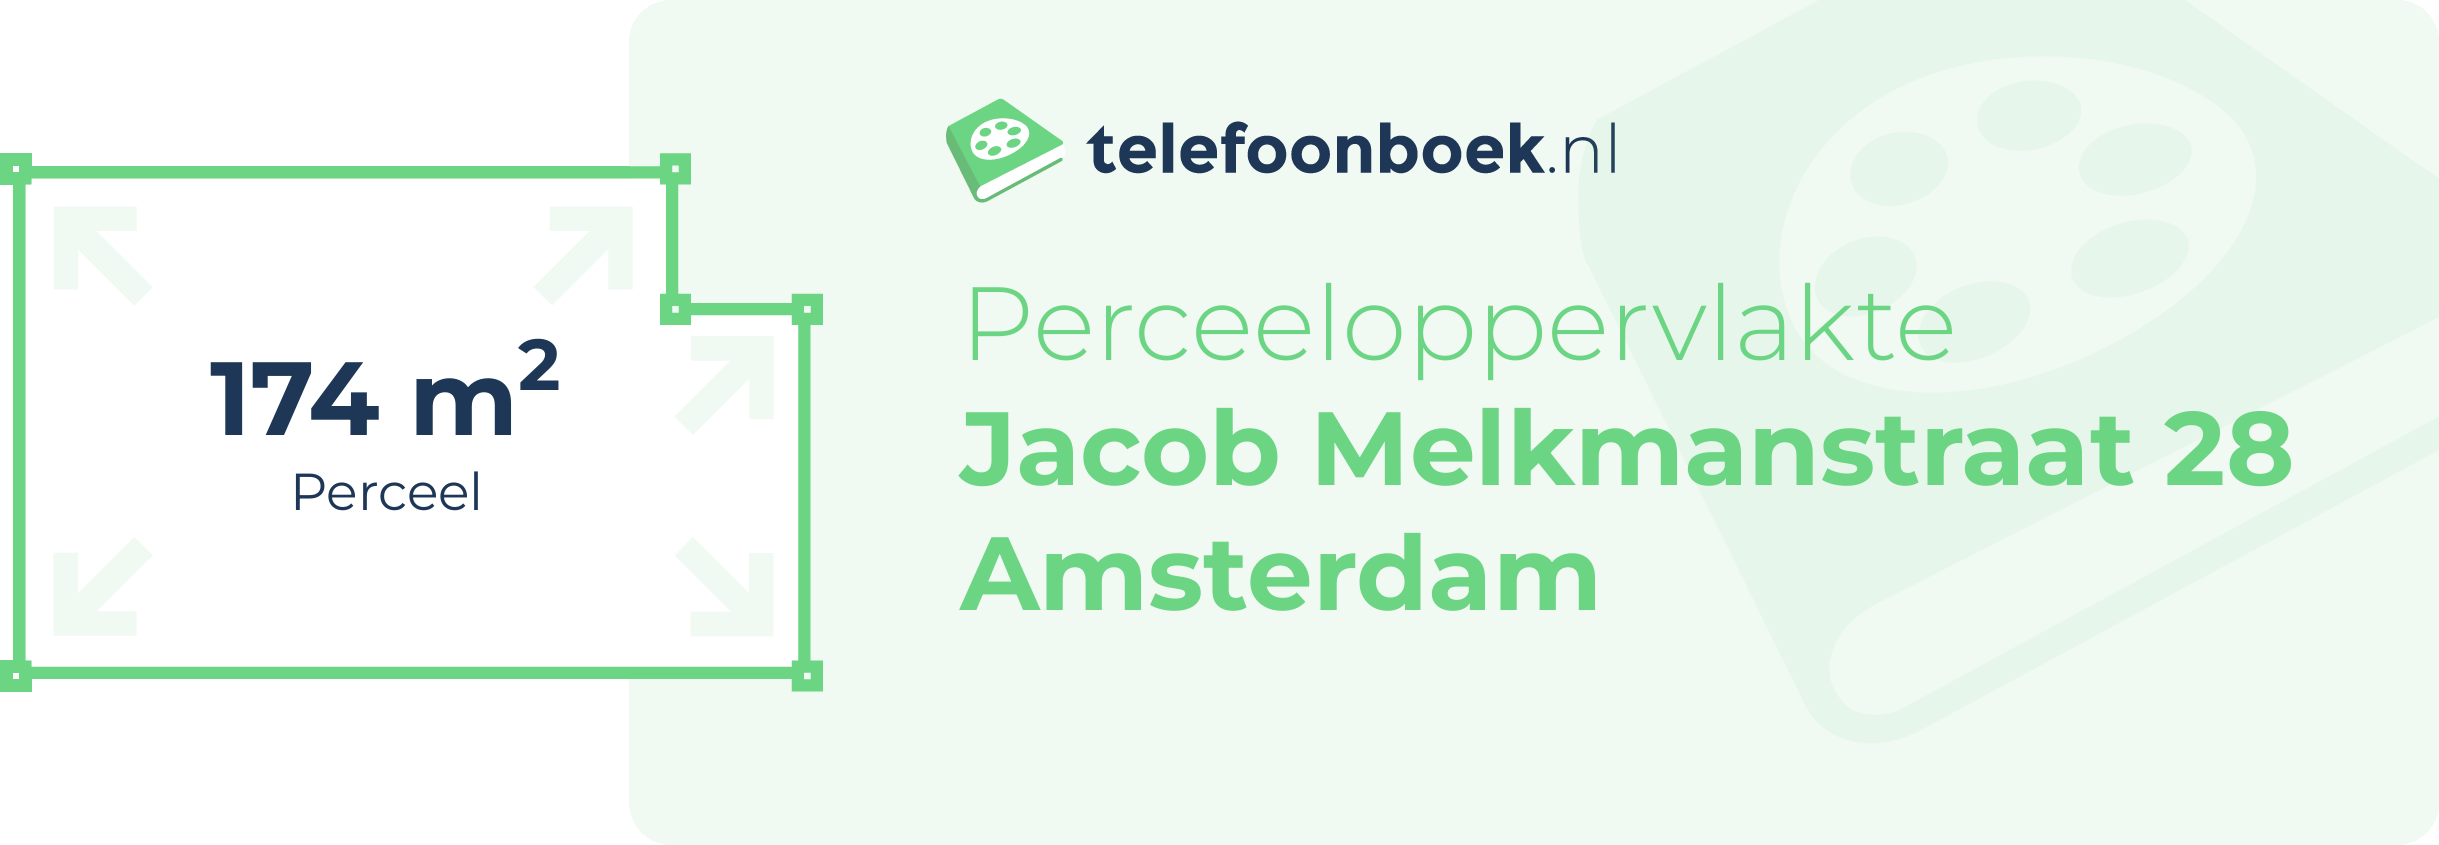 Perceeloppervlakte Jacob Melkmanstraat 28 Amsterdam